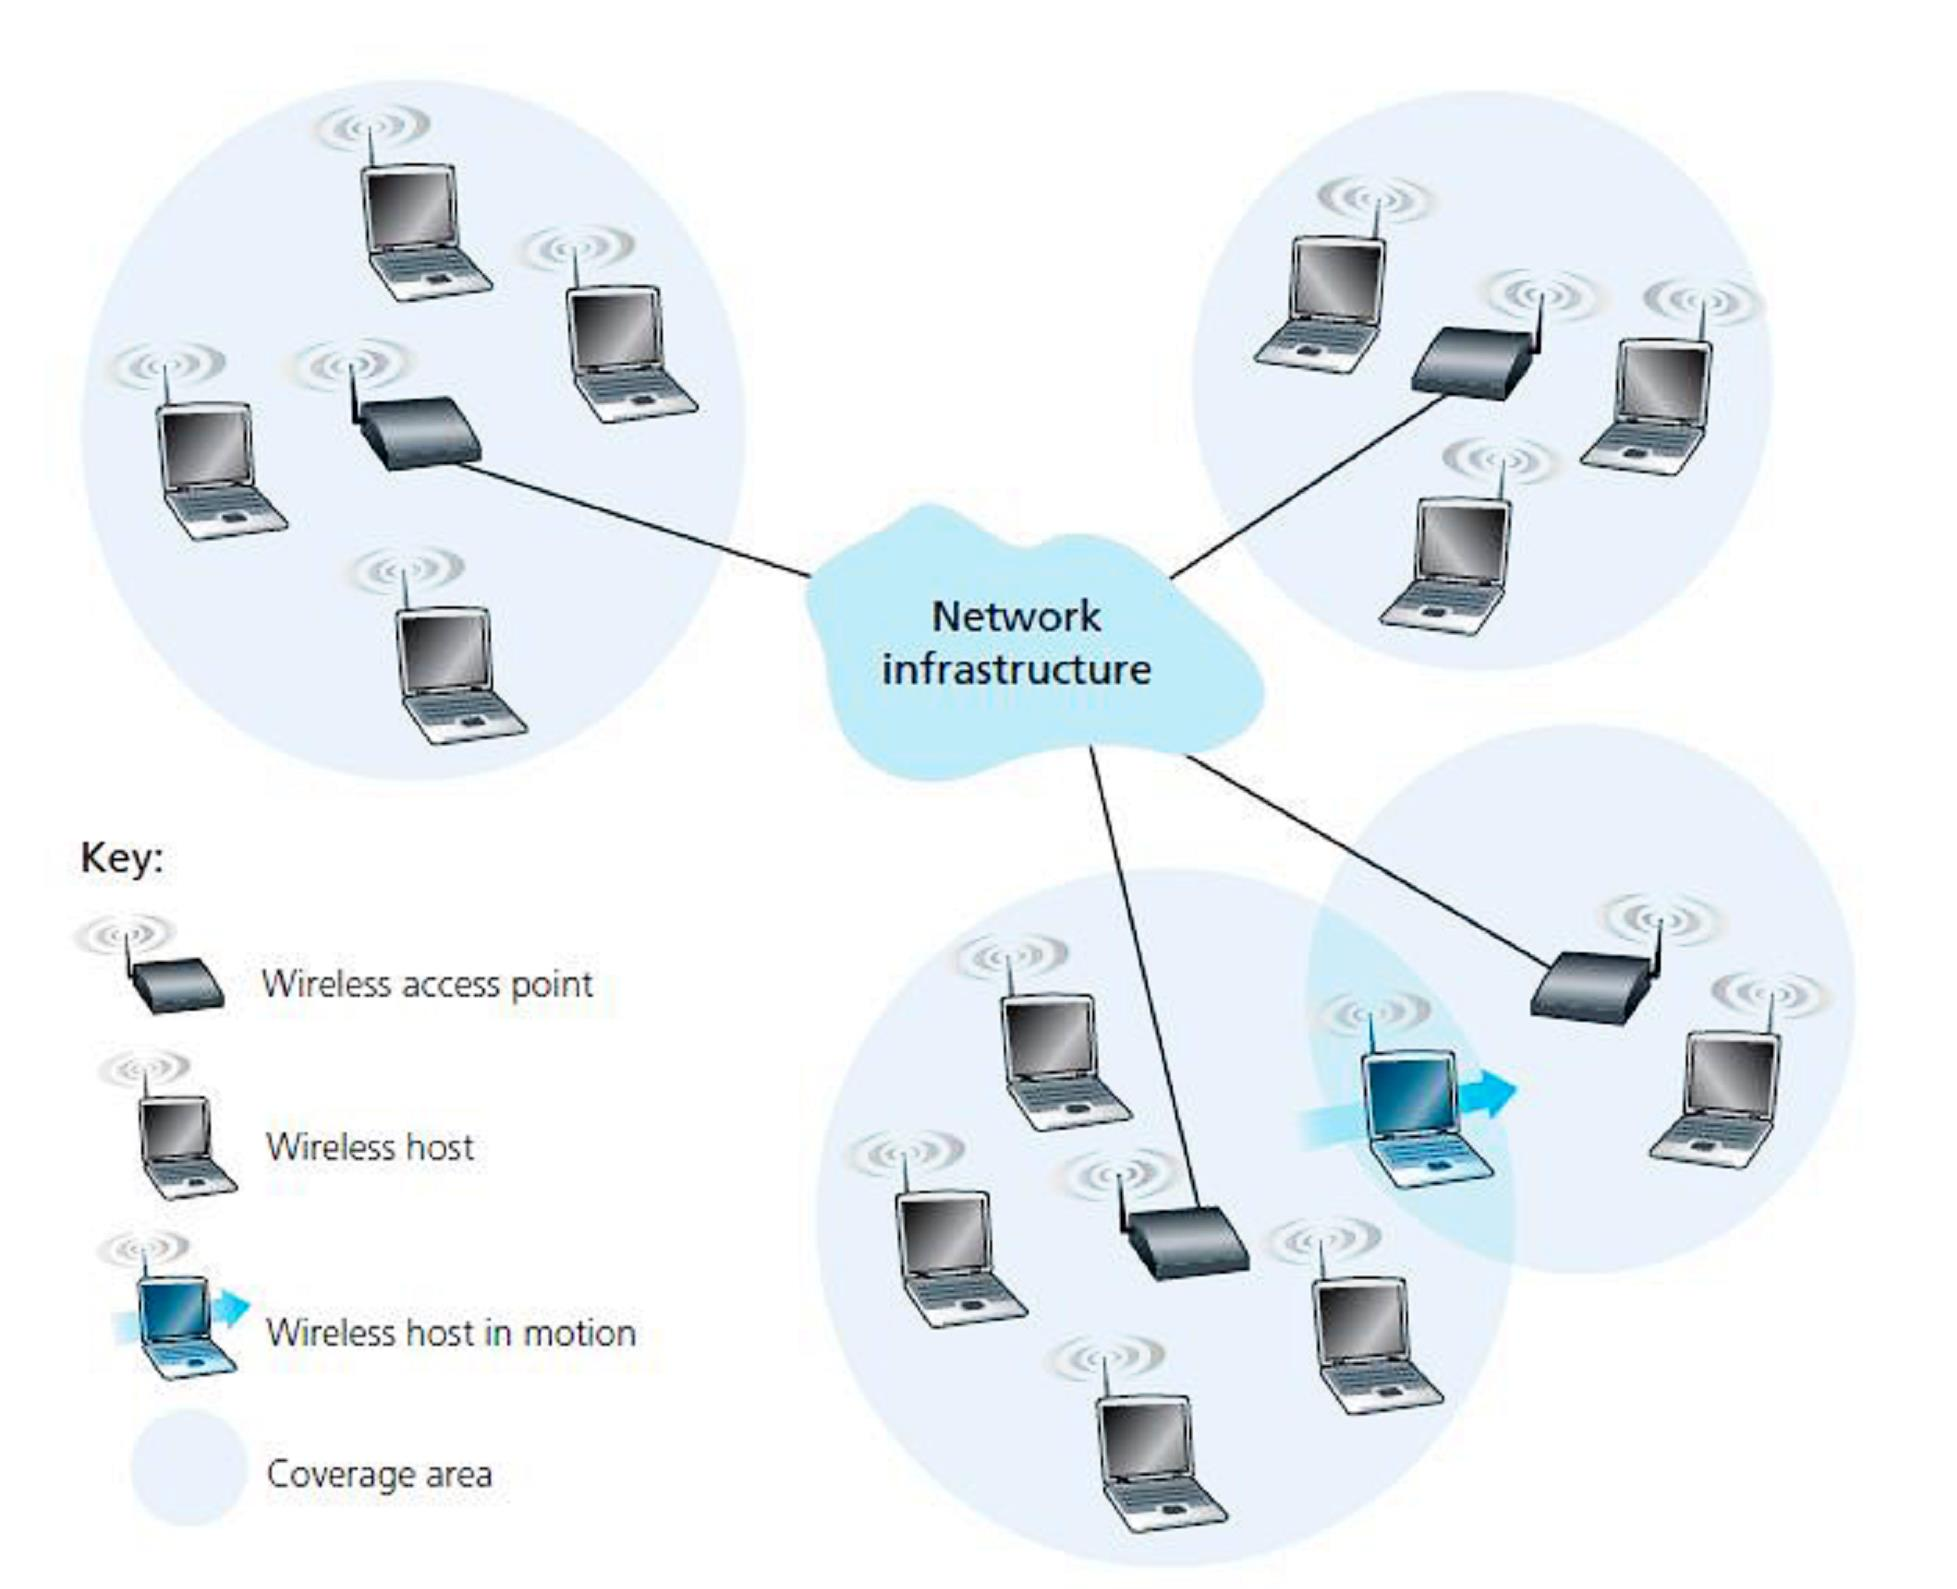 Στοιχεία ασύρματων δικτύων Υποδομή Δικτύου (Network Infrastructure) Μεγαλύτερο δίκτυο με το οποίο μπορεί να θέλει να επικοινωνήσει ο ασύρματος σταθμός